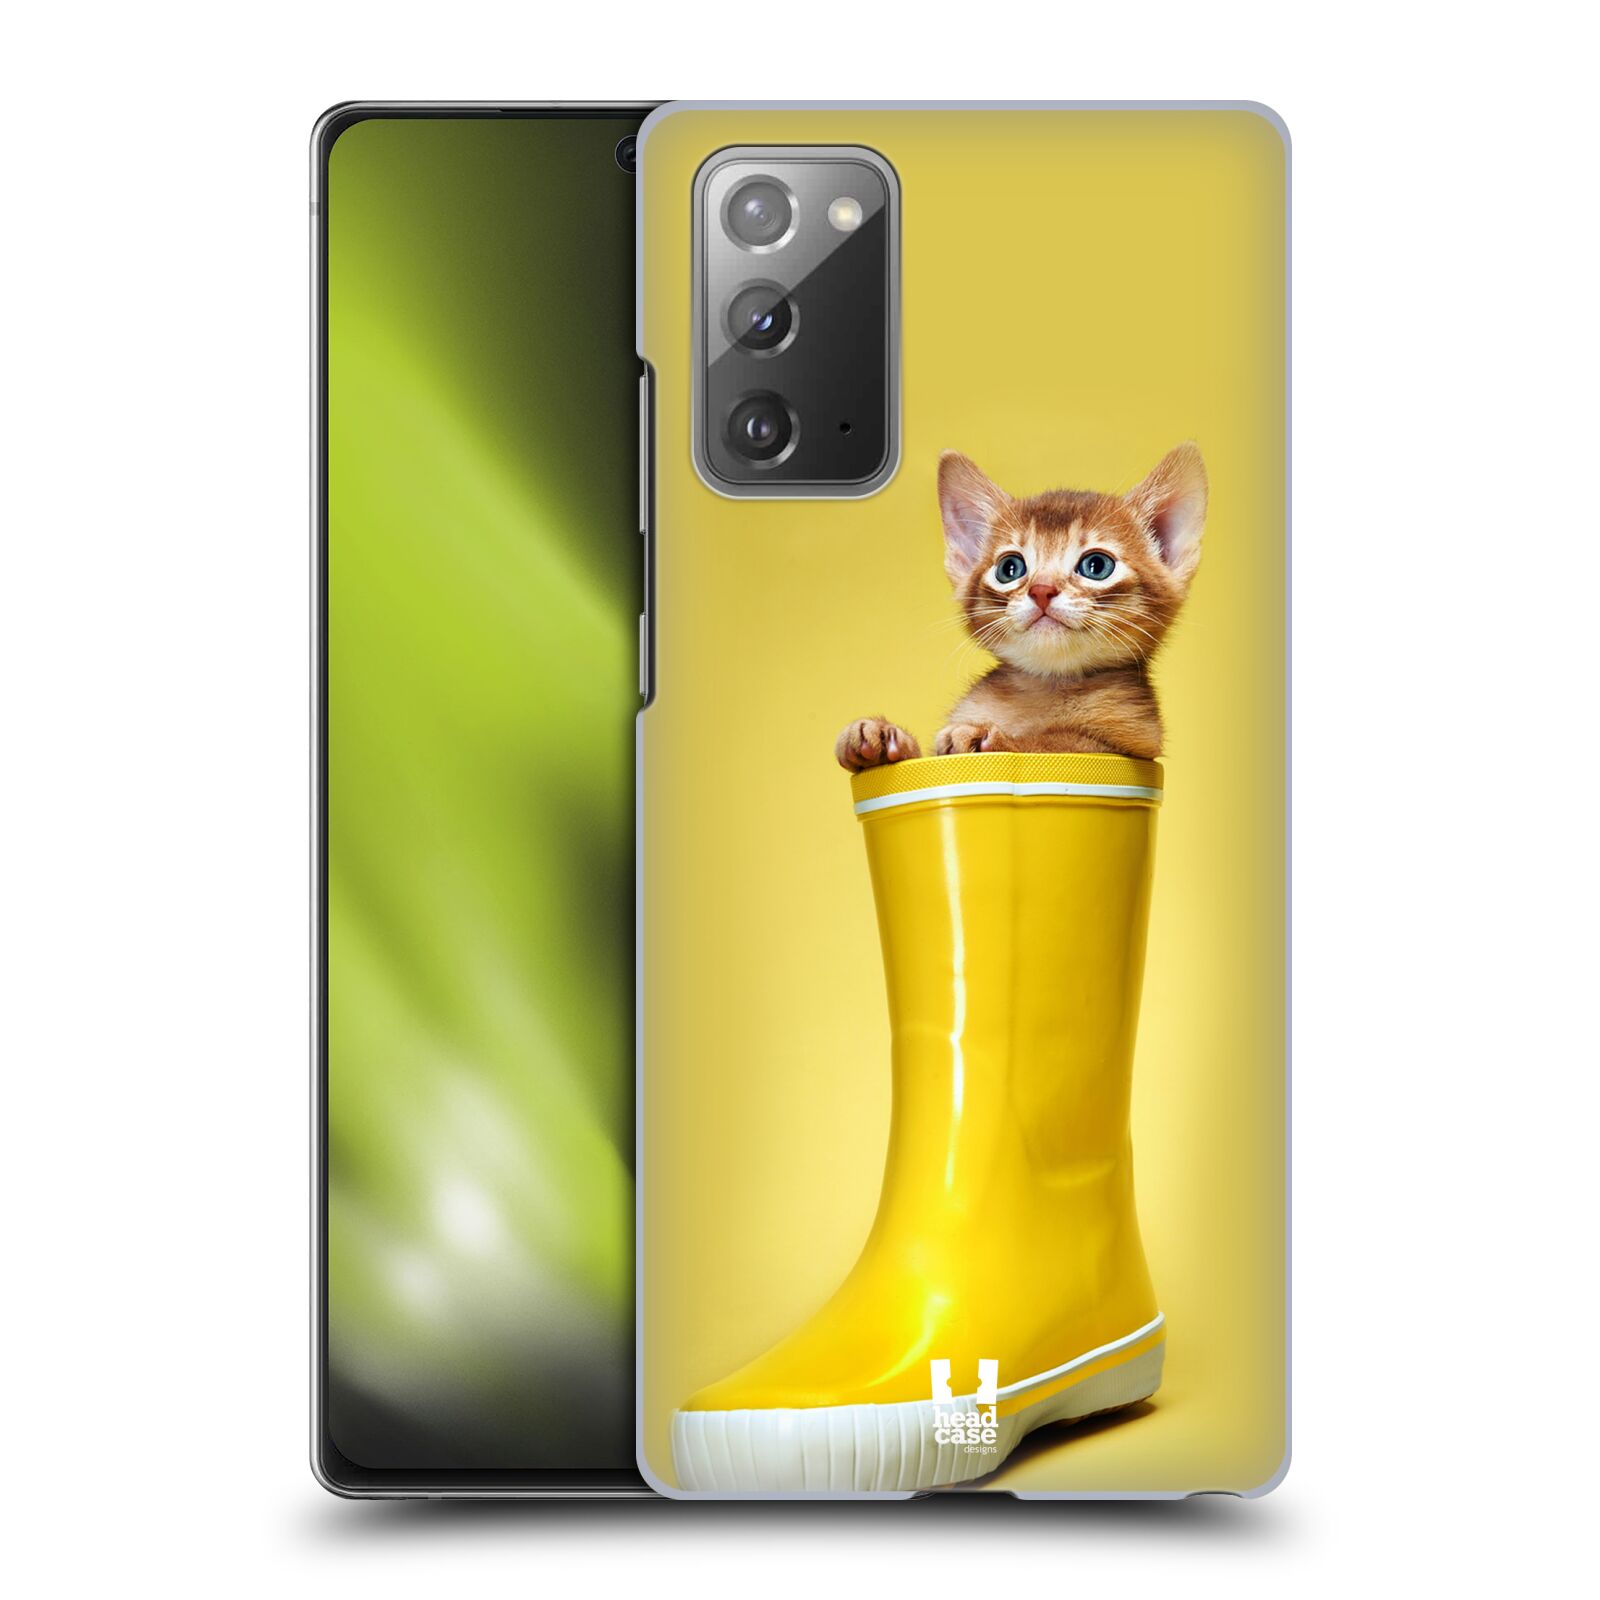 Plastový obal HEAD CASE na mobil Samsung Galaxy Note 20 vzor Legrační zvířátka kotě v botě žlutá